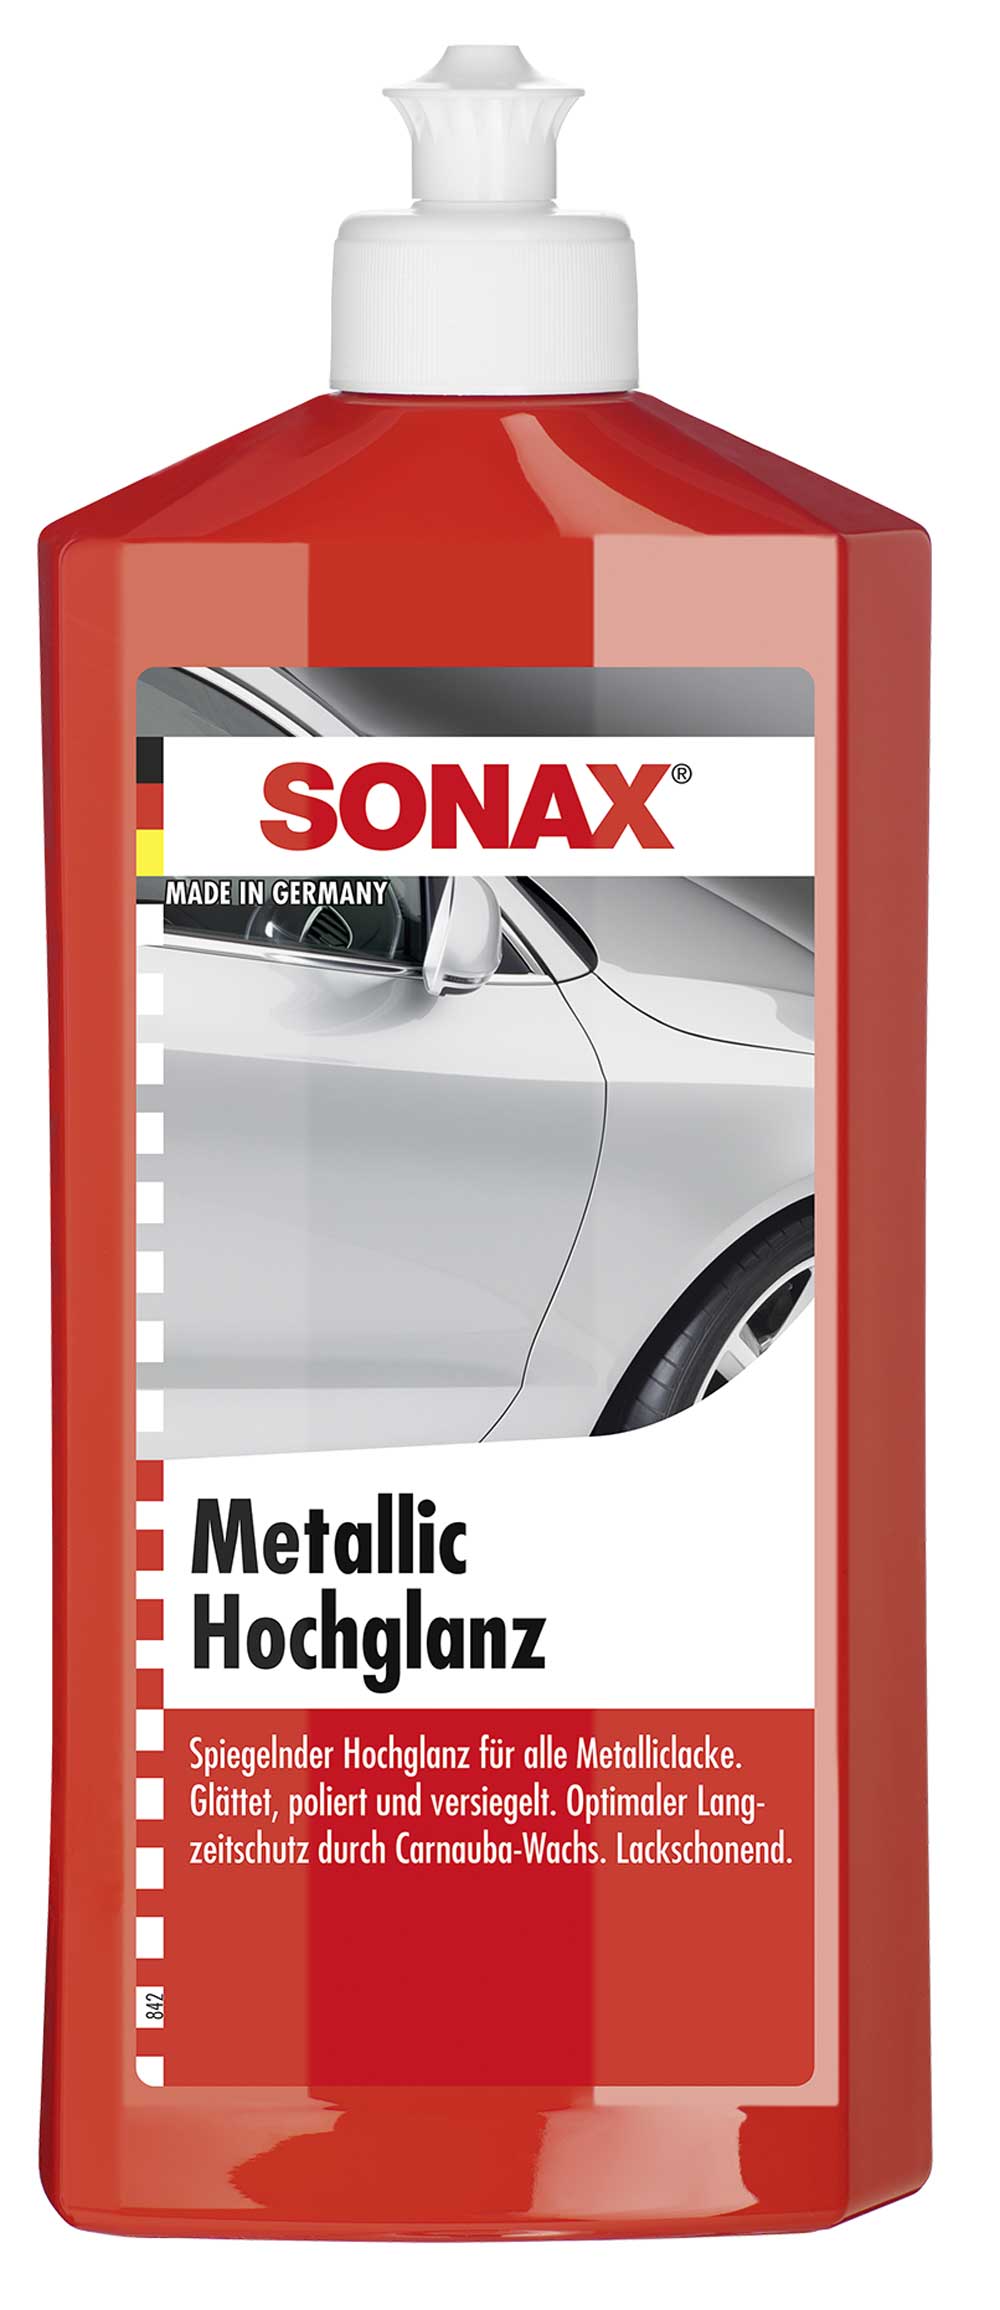 SONAX MetallicHochglanz Lackpolitur